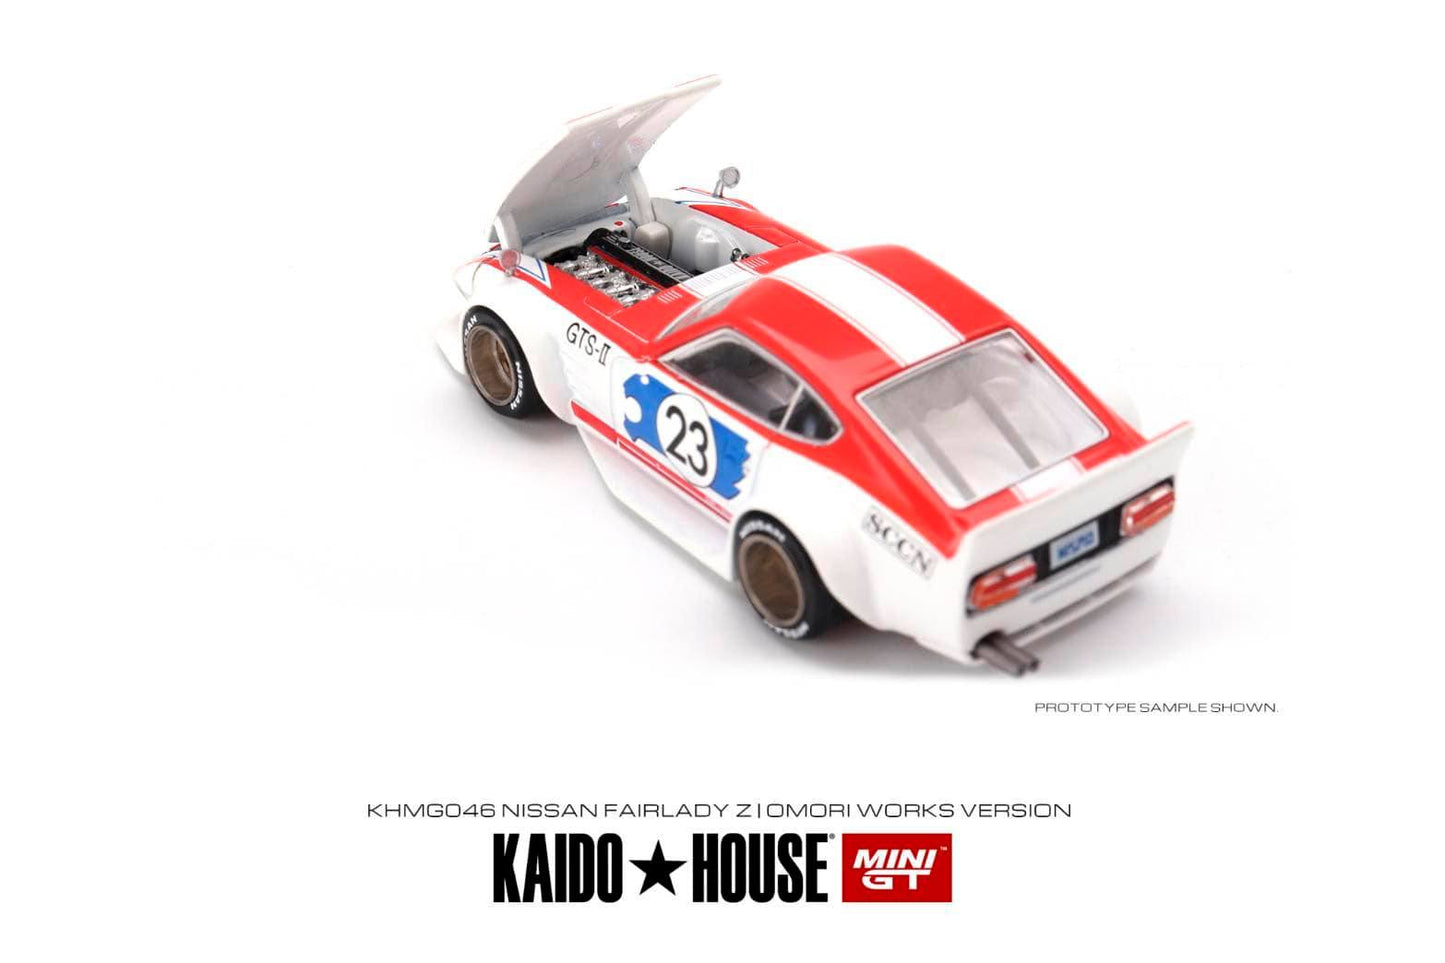 Mini GT x Kaido House Nissan Fairlady Z Omori Works